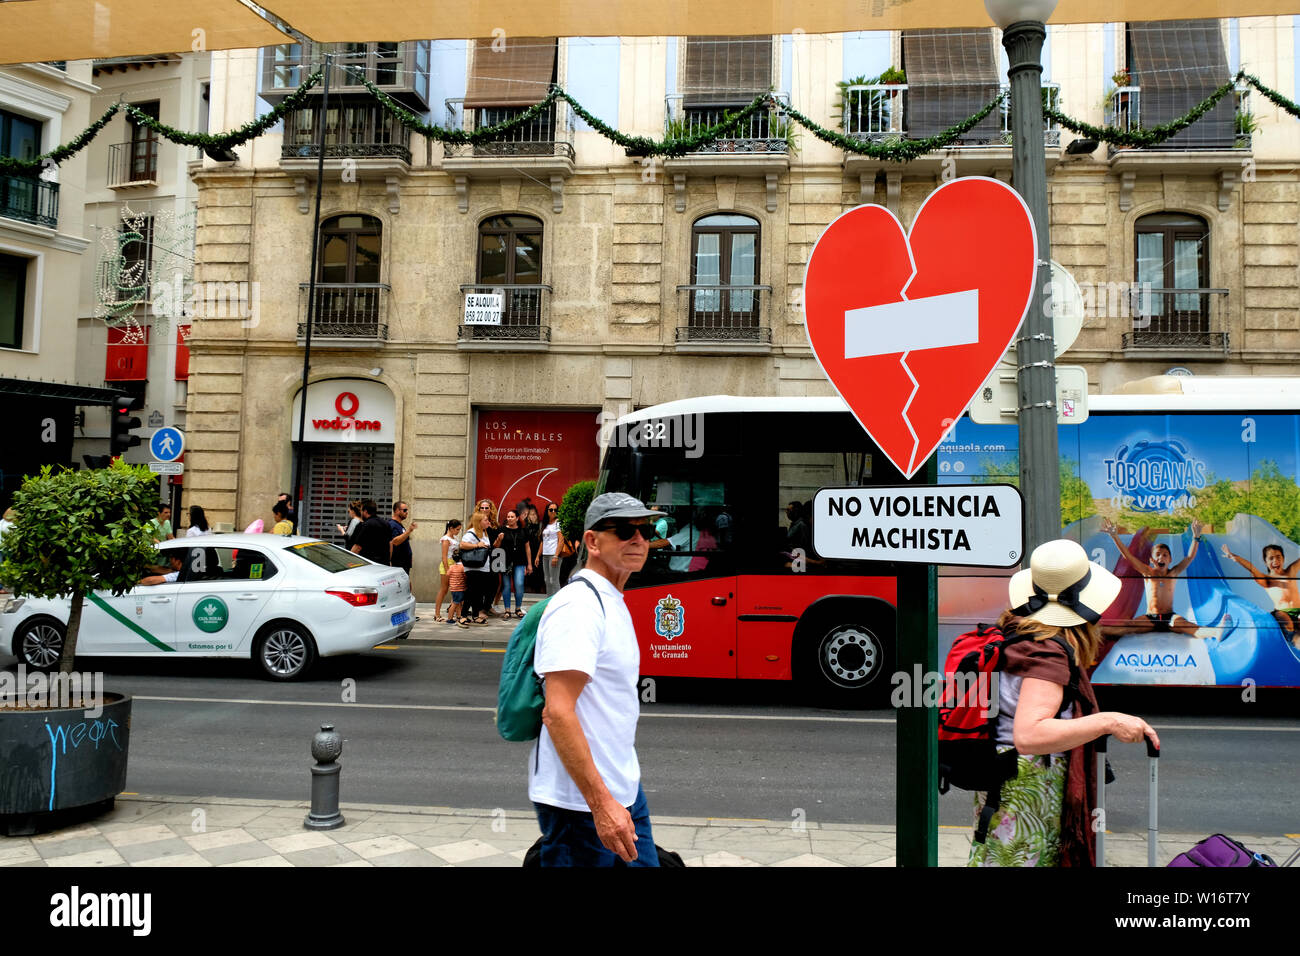 Zeichen in der Form eines gebrochenen Herzen Plädoyer für das Ende der Gewalt in der Innenstadt von Granada, Spanien; "no Violencia machista" (kein macho Gewalt). Stockfoto